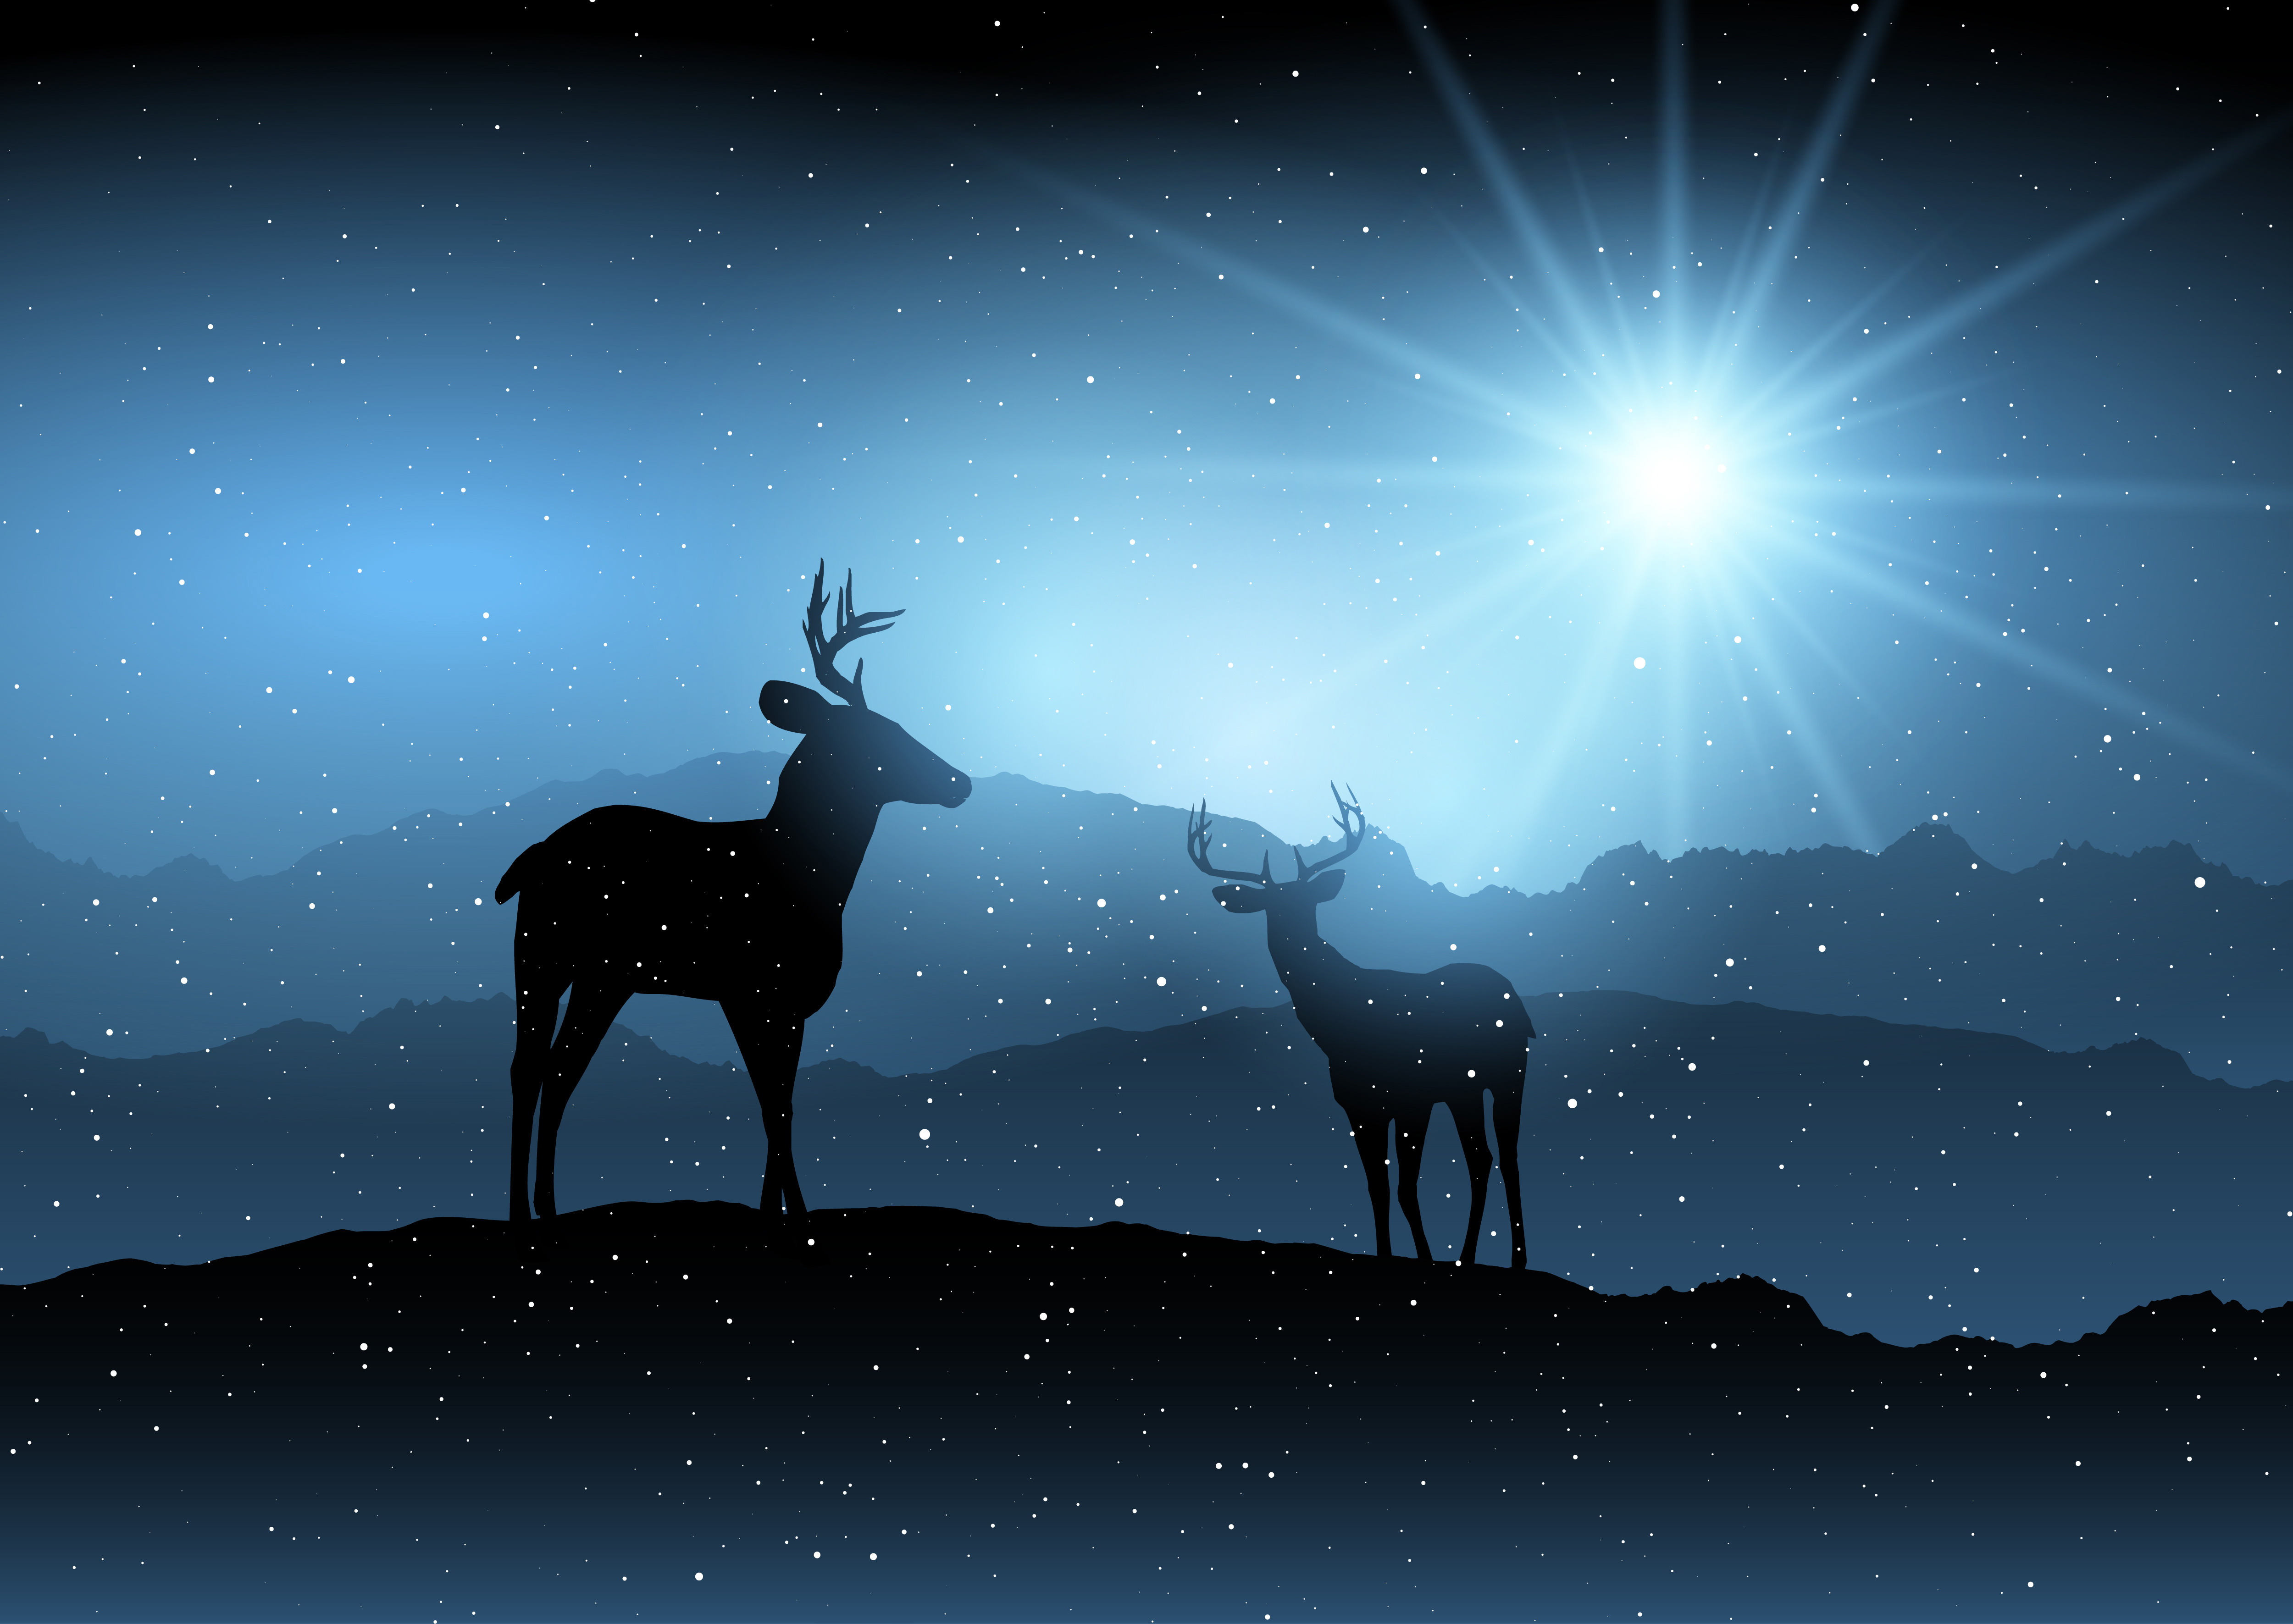 Download Winter background with deer 267479 Vector Art at Vecteezy